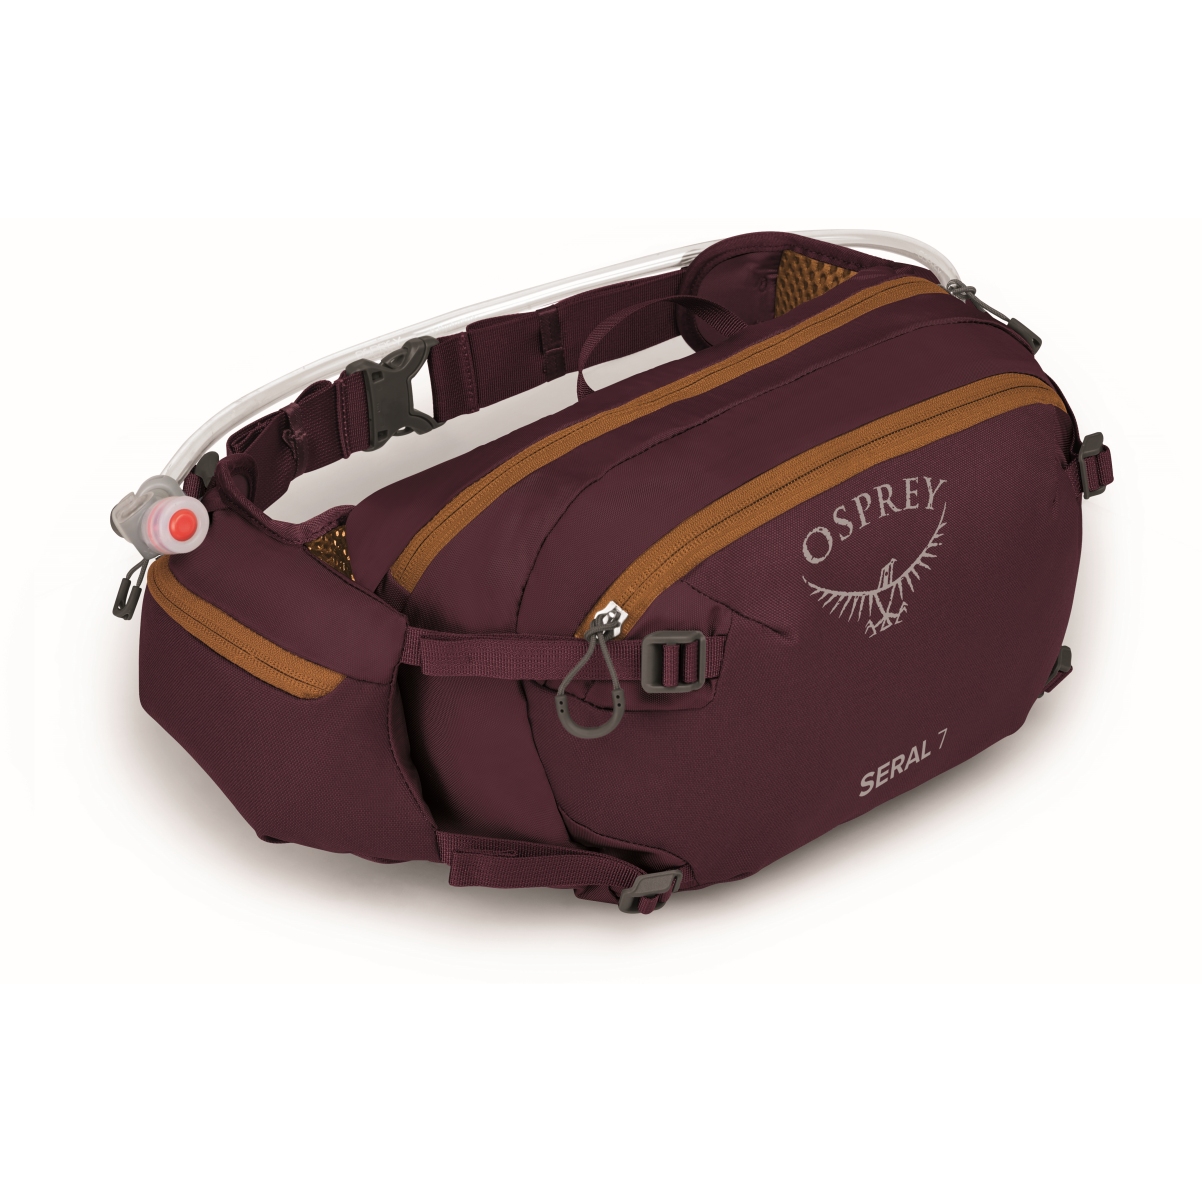 Produktbild von Osprey Seral 7 Hüfttasche + Trinkblase - Aprium Purple